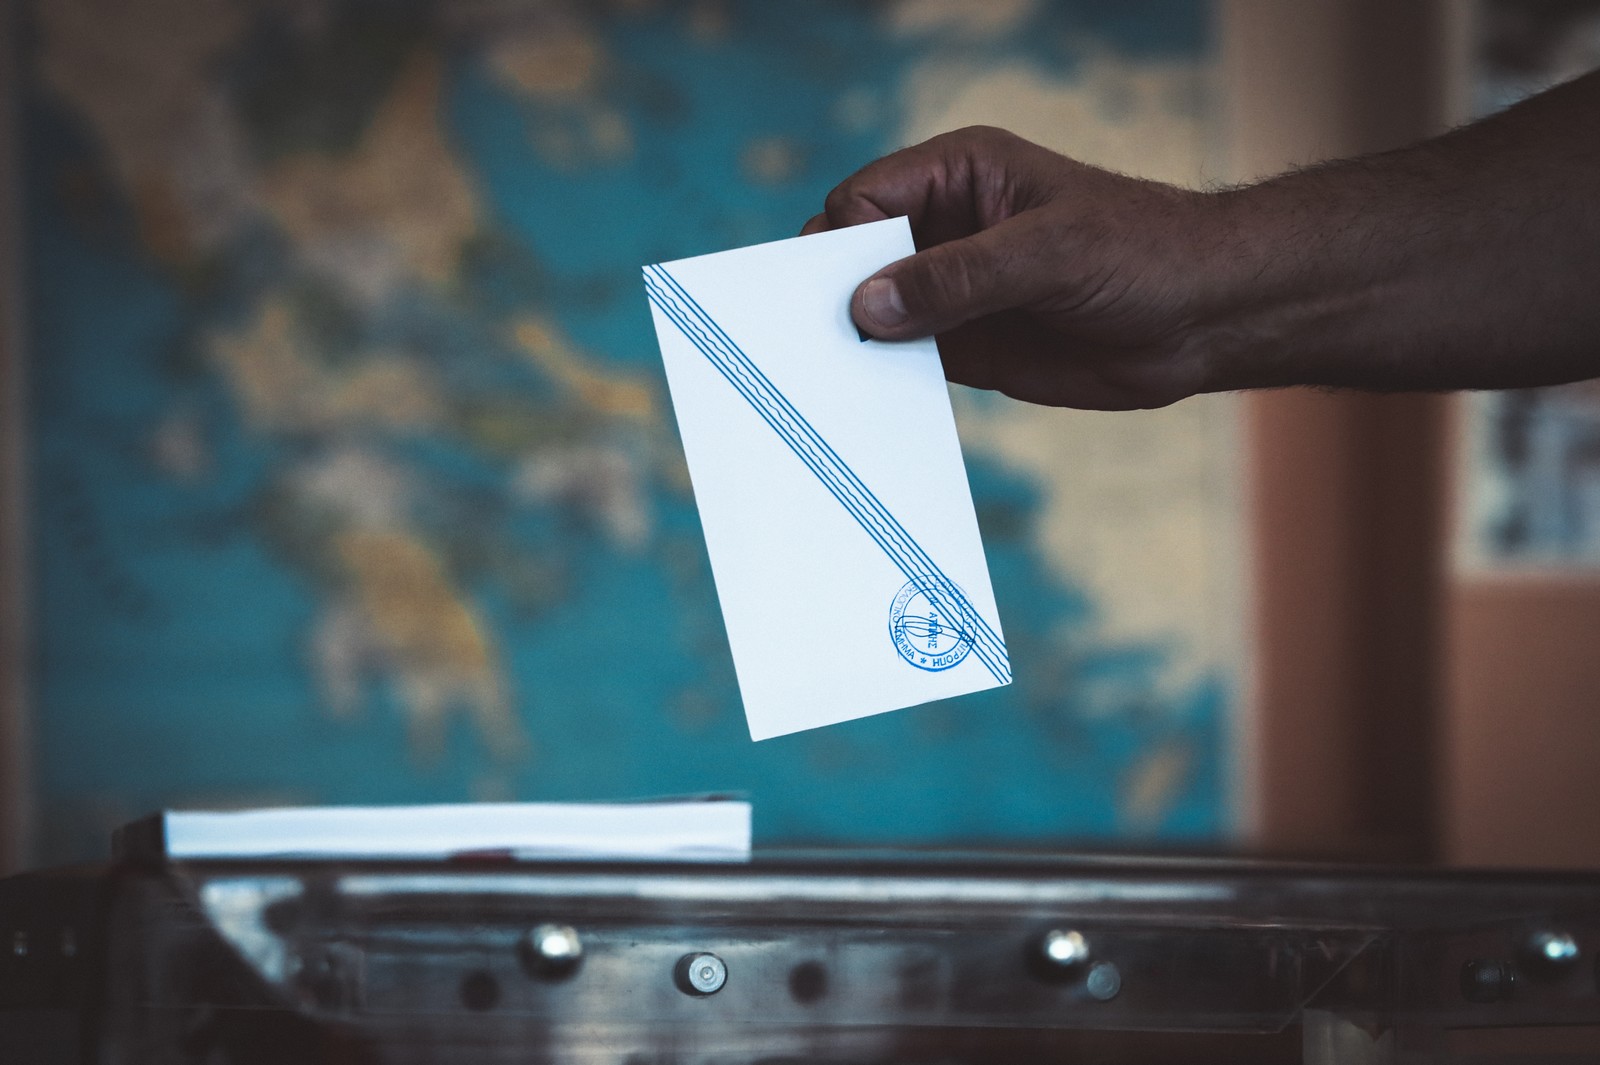 δημοσκόπηση opinion poll: στο 33,2% η νδ εν όψει ευρωεκλογών - δεύτερος ο συριζα